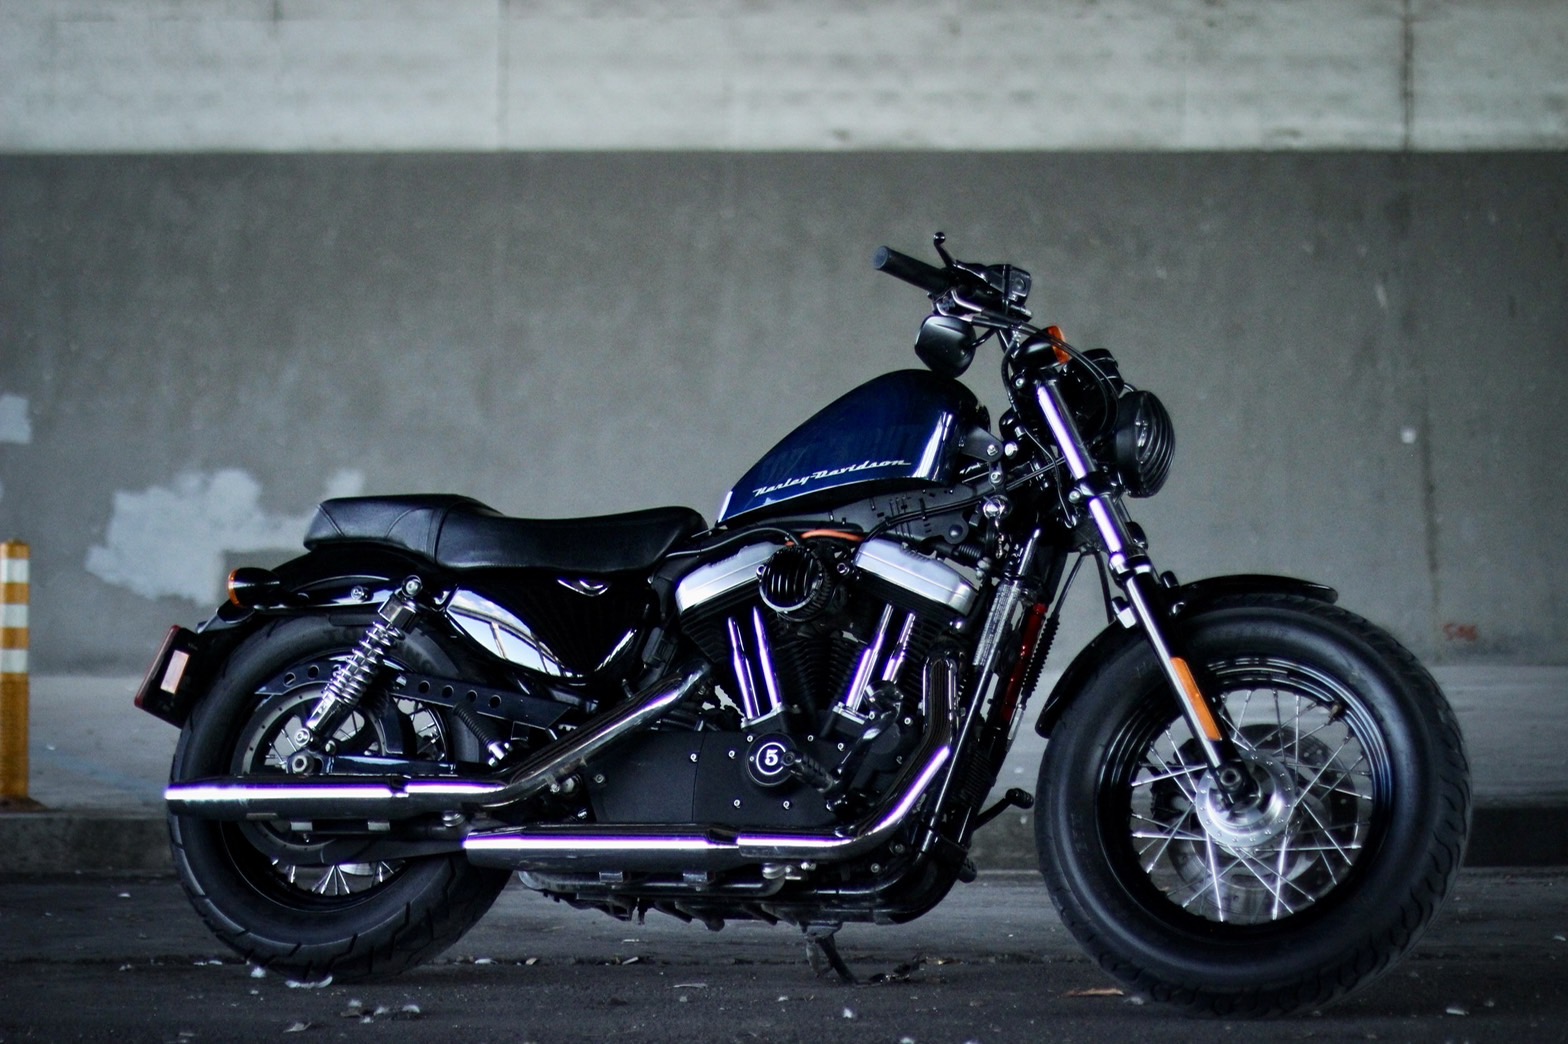 【一拳車業】HARLEY-DAVIDSON XL1200X - 「Webike-摩托車市」 2013 哈雷48 太古車 絕版鋼絲框 車庫車 低里程